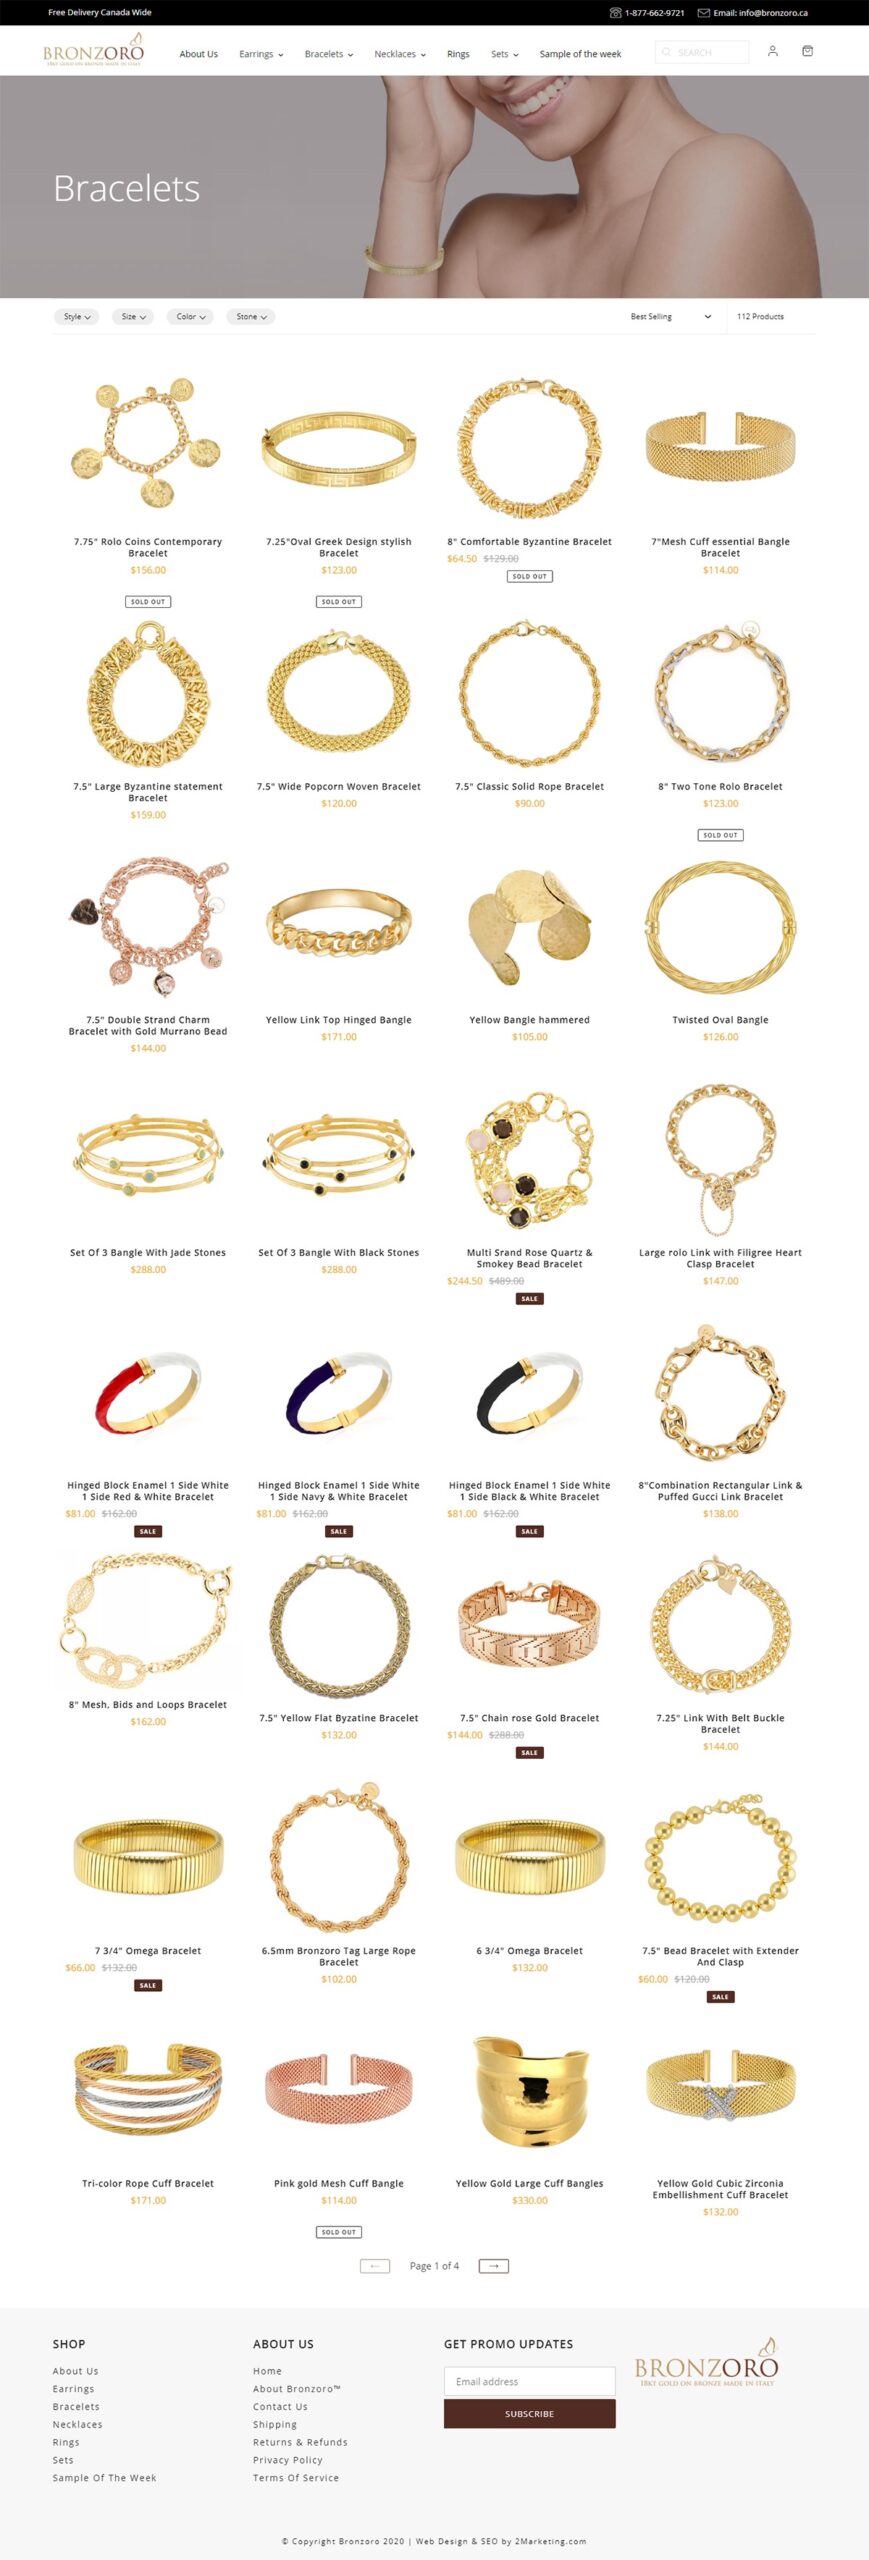 bronzoro-ca-collections-bracelets